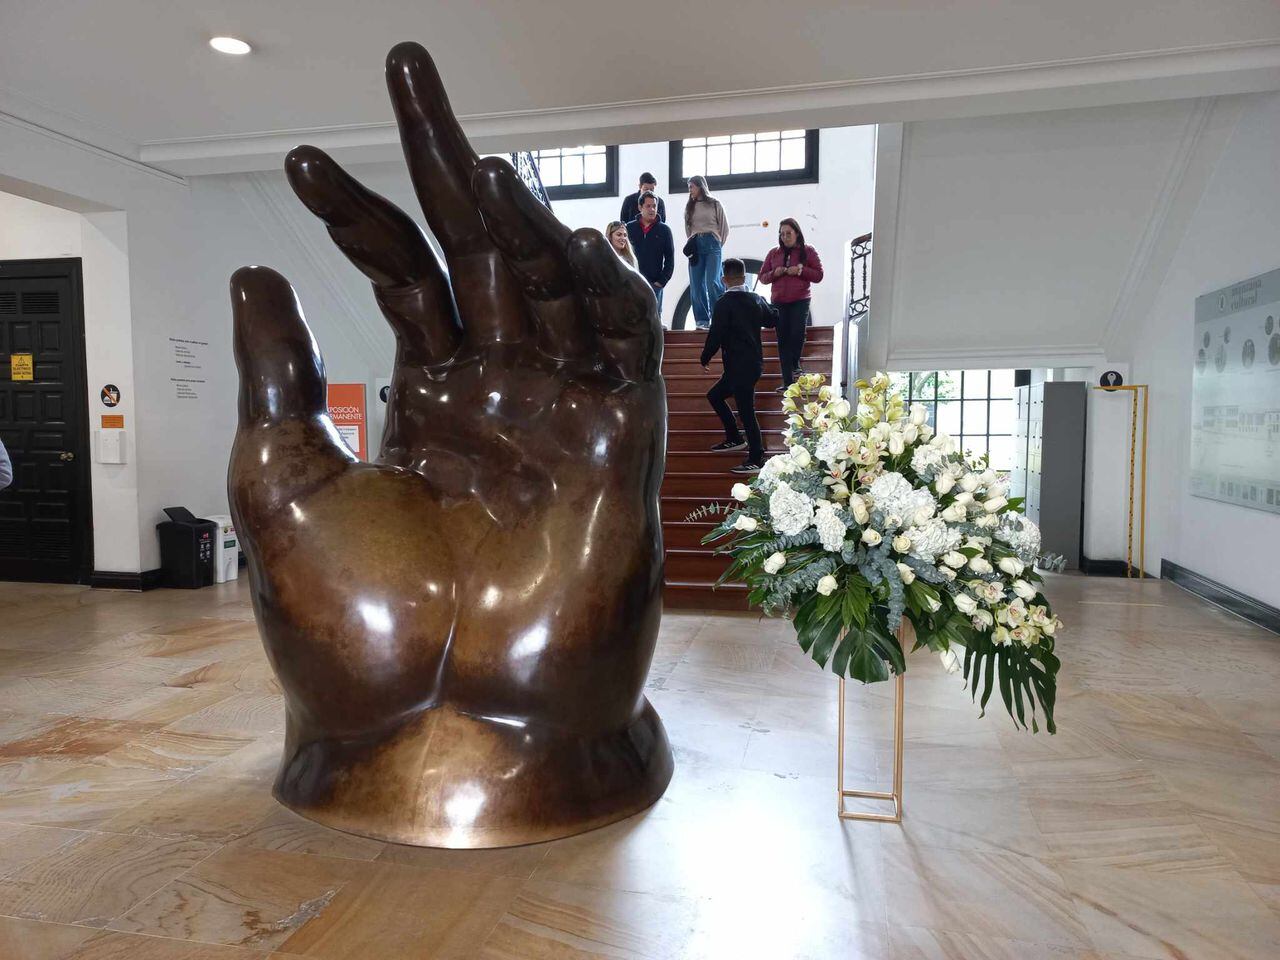 El Banco de la República dispuso de un arreglo floral al lado de la escultura de una mano en bronce de autoría del maestro Fernando Botero.